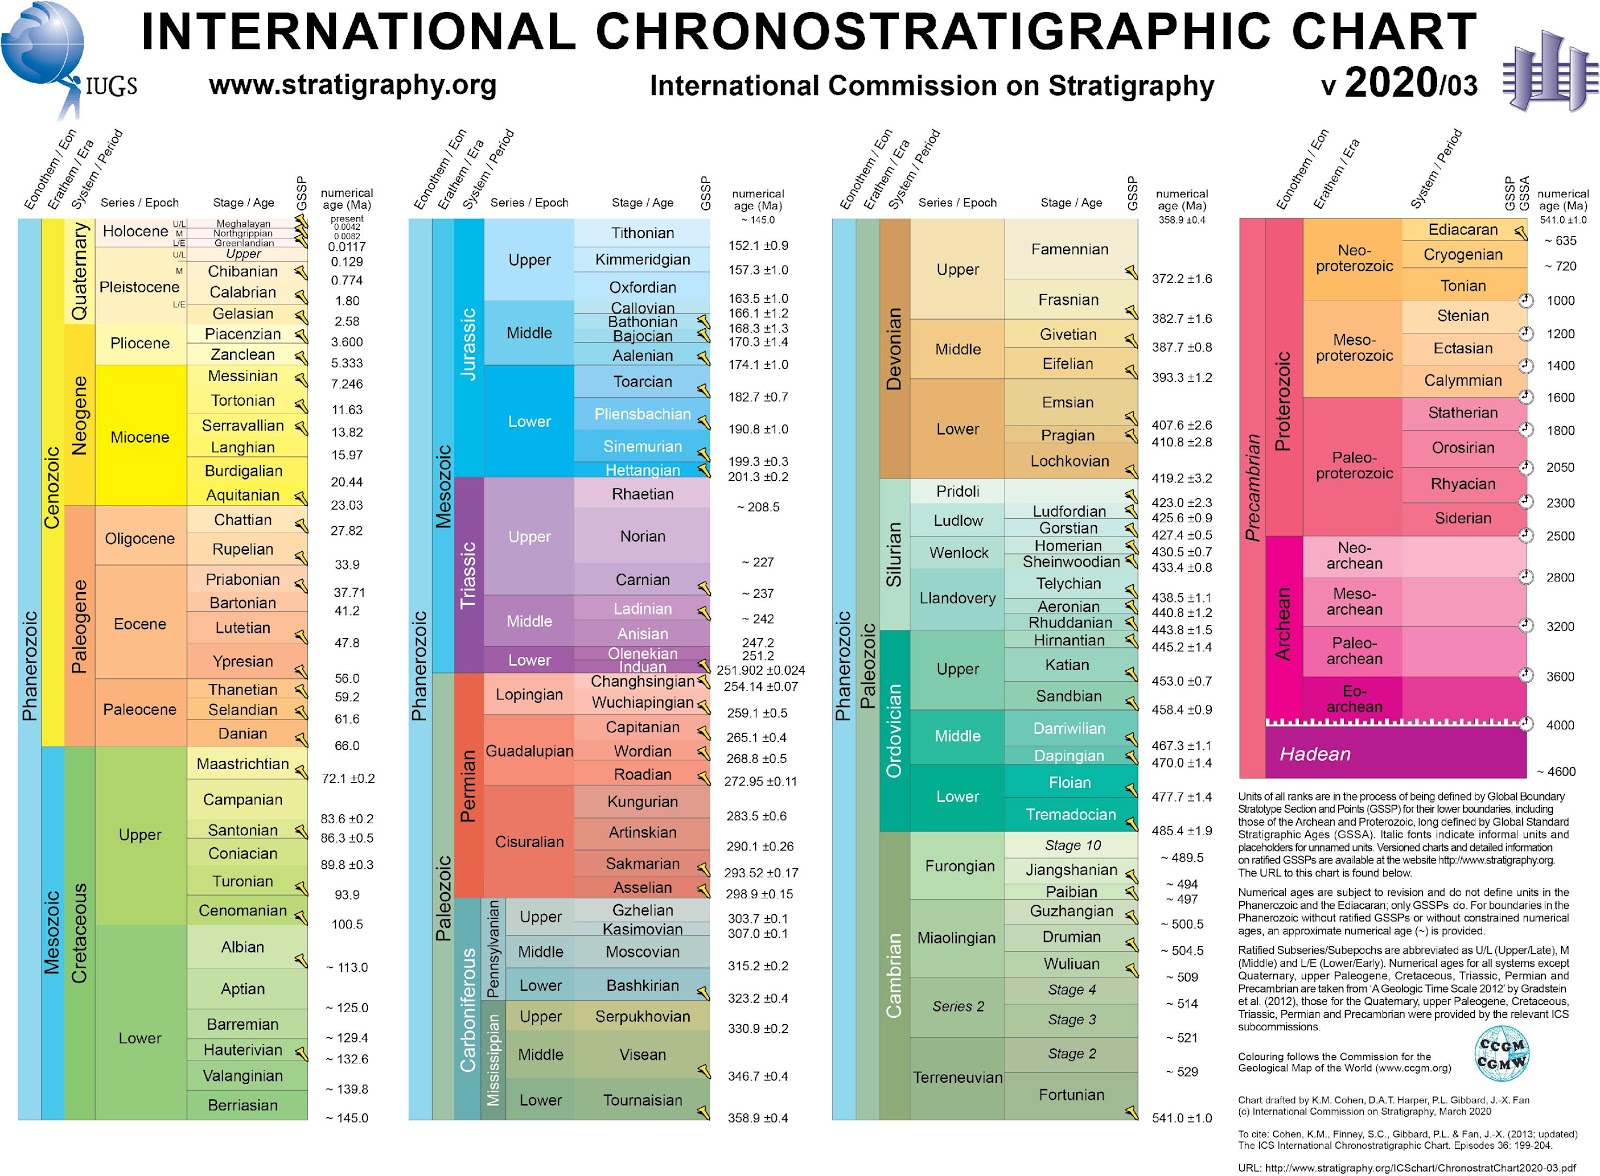 <b>Échelle chronostatigraphique internationale Version 2020</b><div><i>Échelle chronostratigraphique : autorisation accordée pour l’enseignement sans but commercial,  https://stratigraphy.org/icschart/Permissions_ICS_2017_v2.pdf, https://stratigraphy.org/icschart/ChronostratChart2020-03.jpg</i><b><br></b></div>